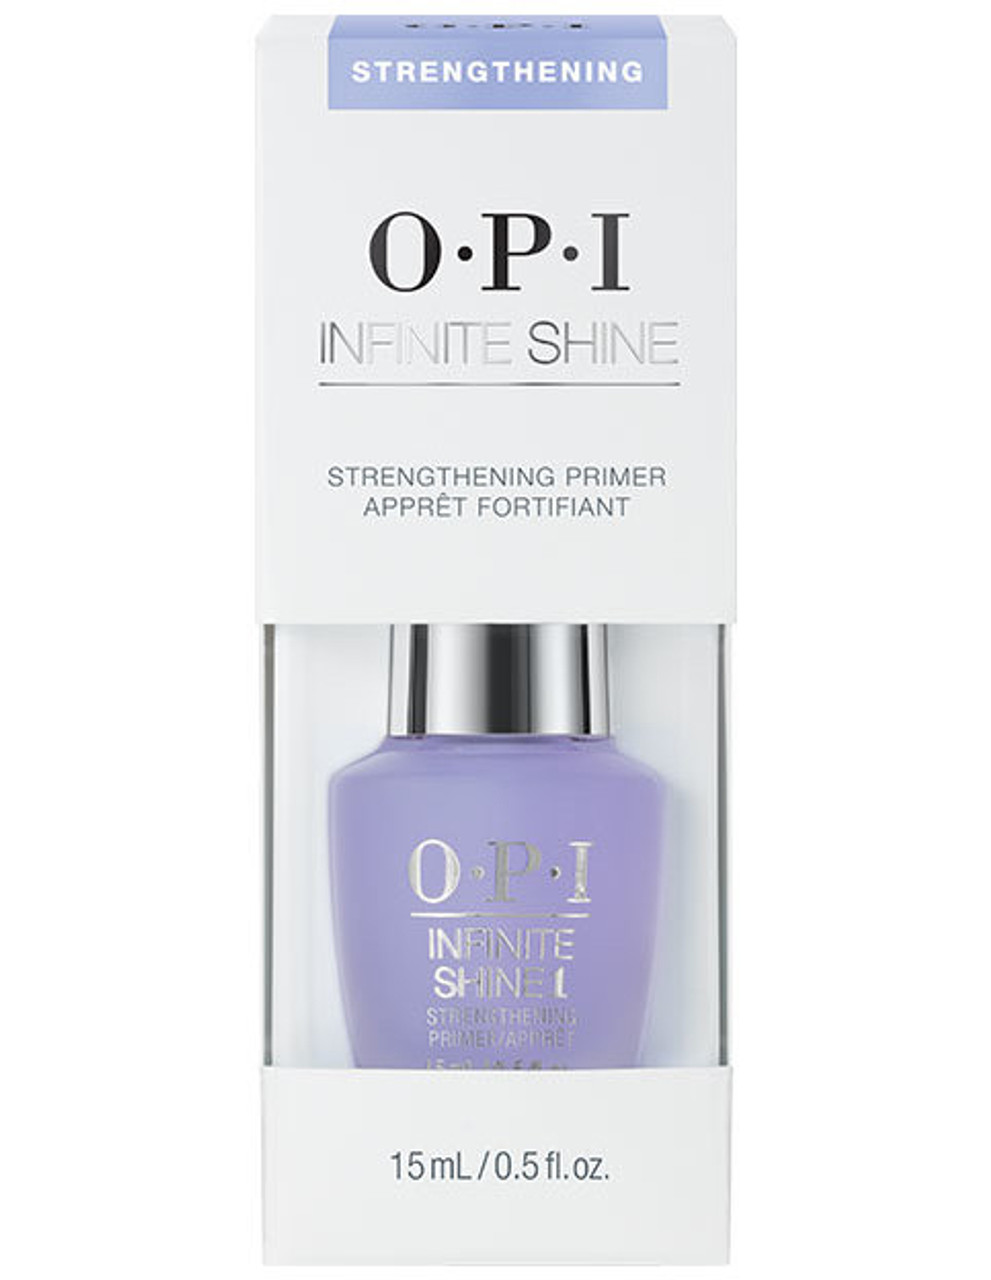 OPI Infinite Shine Strengthening Primer - 0.5 oz